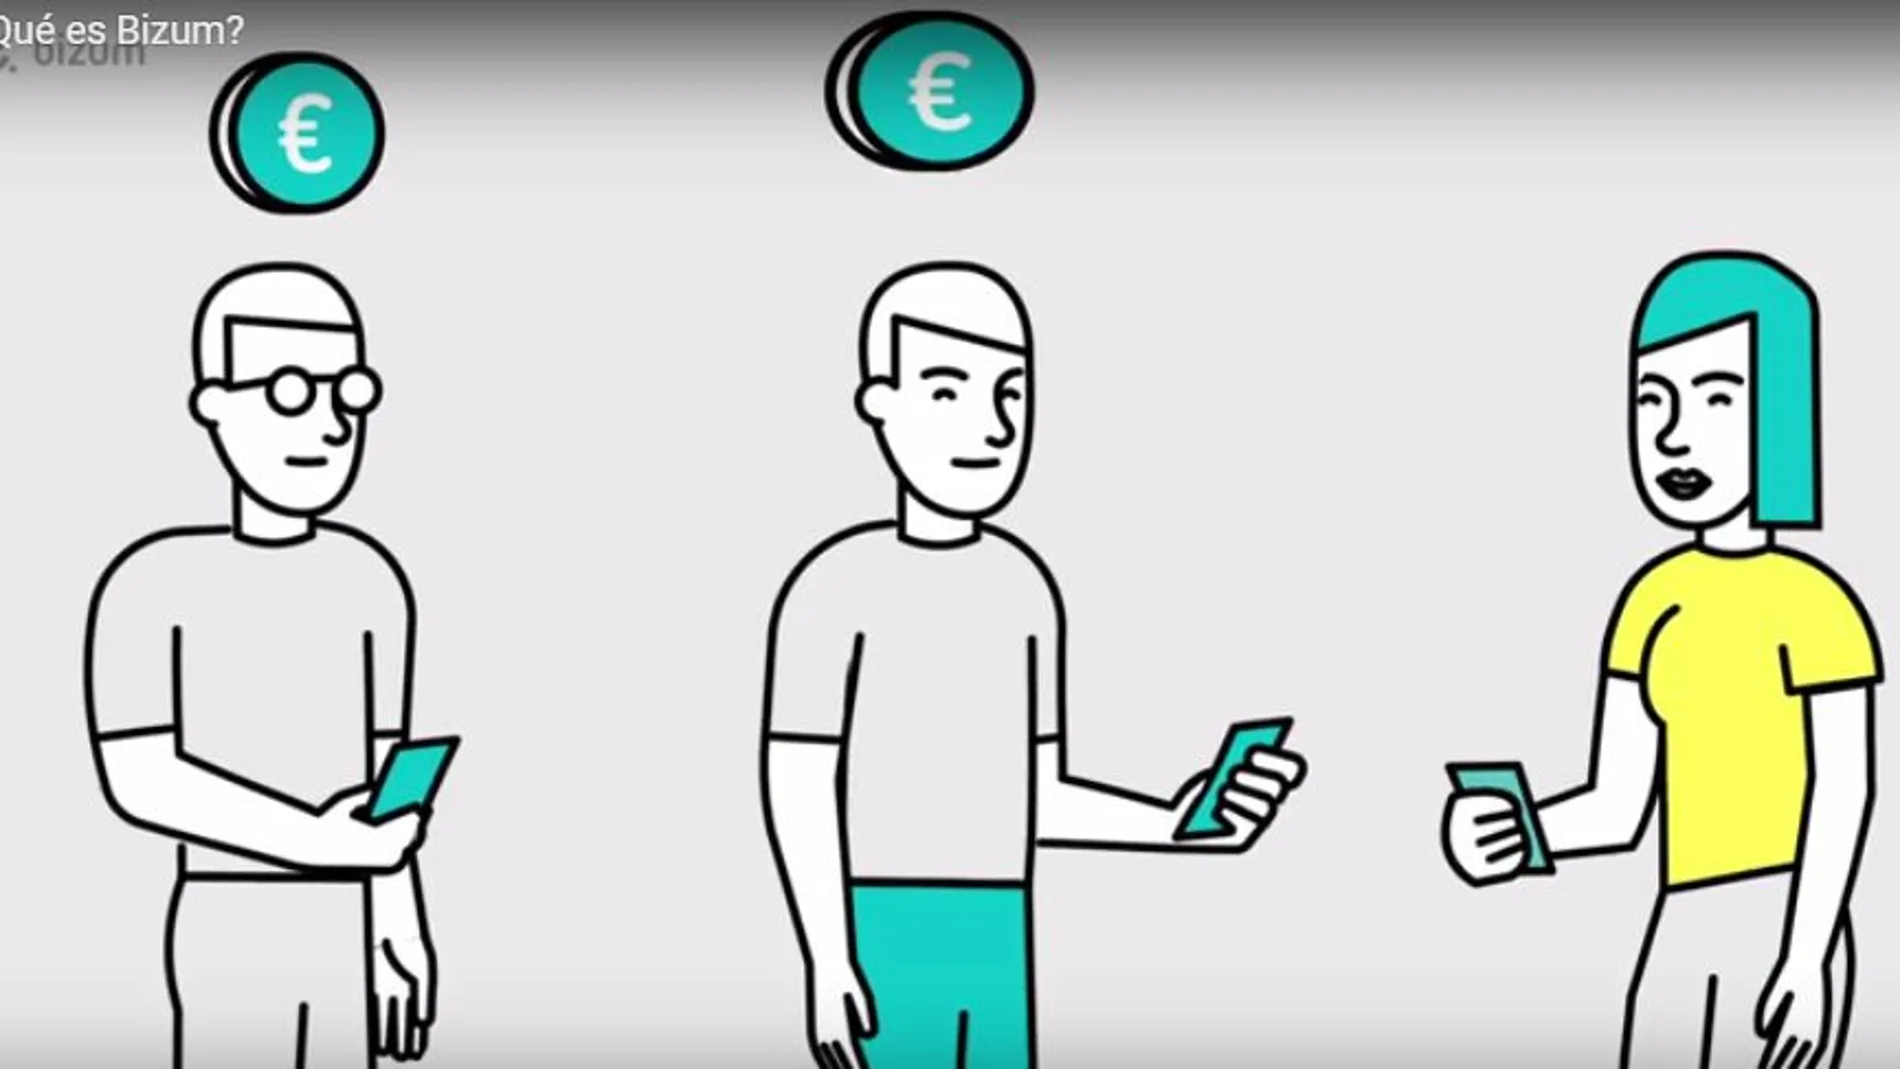 La banca española lanza Bizum, un sistema para pagar y enviar dinero por el móvil